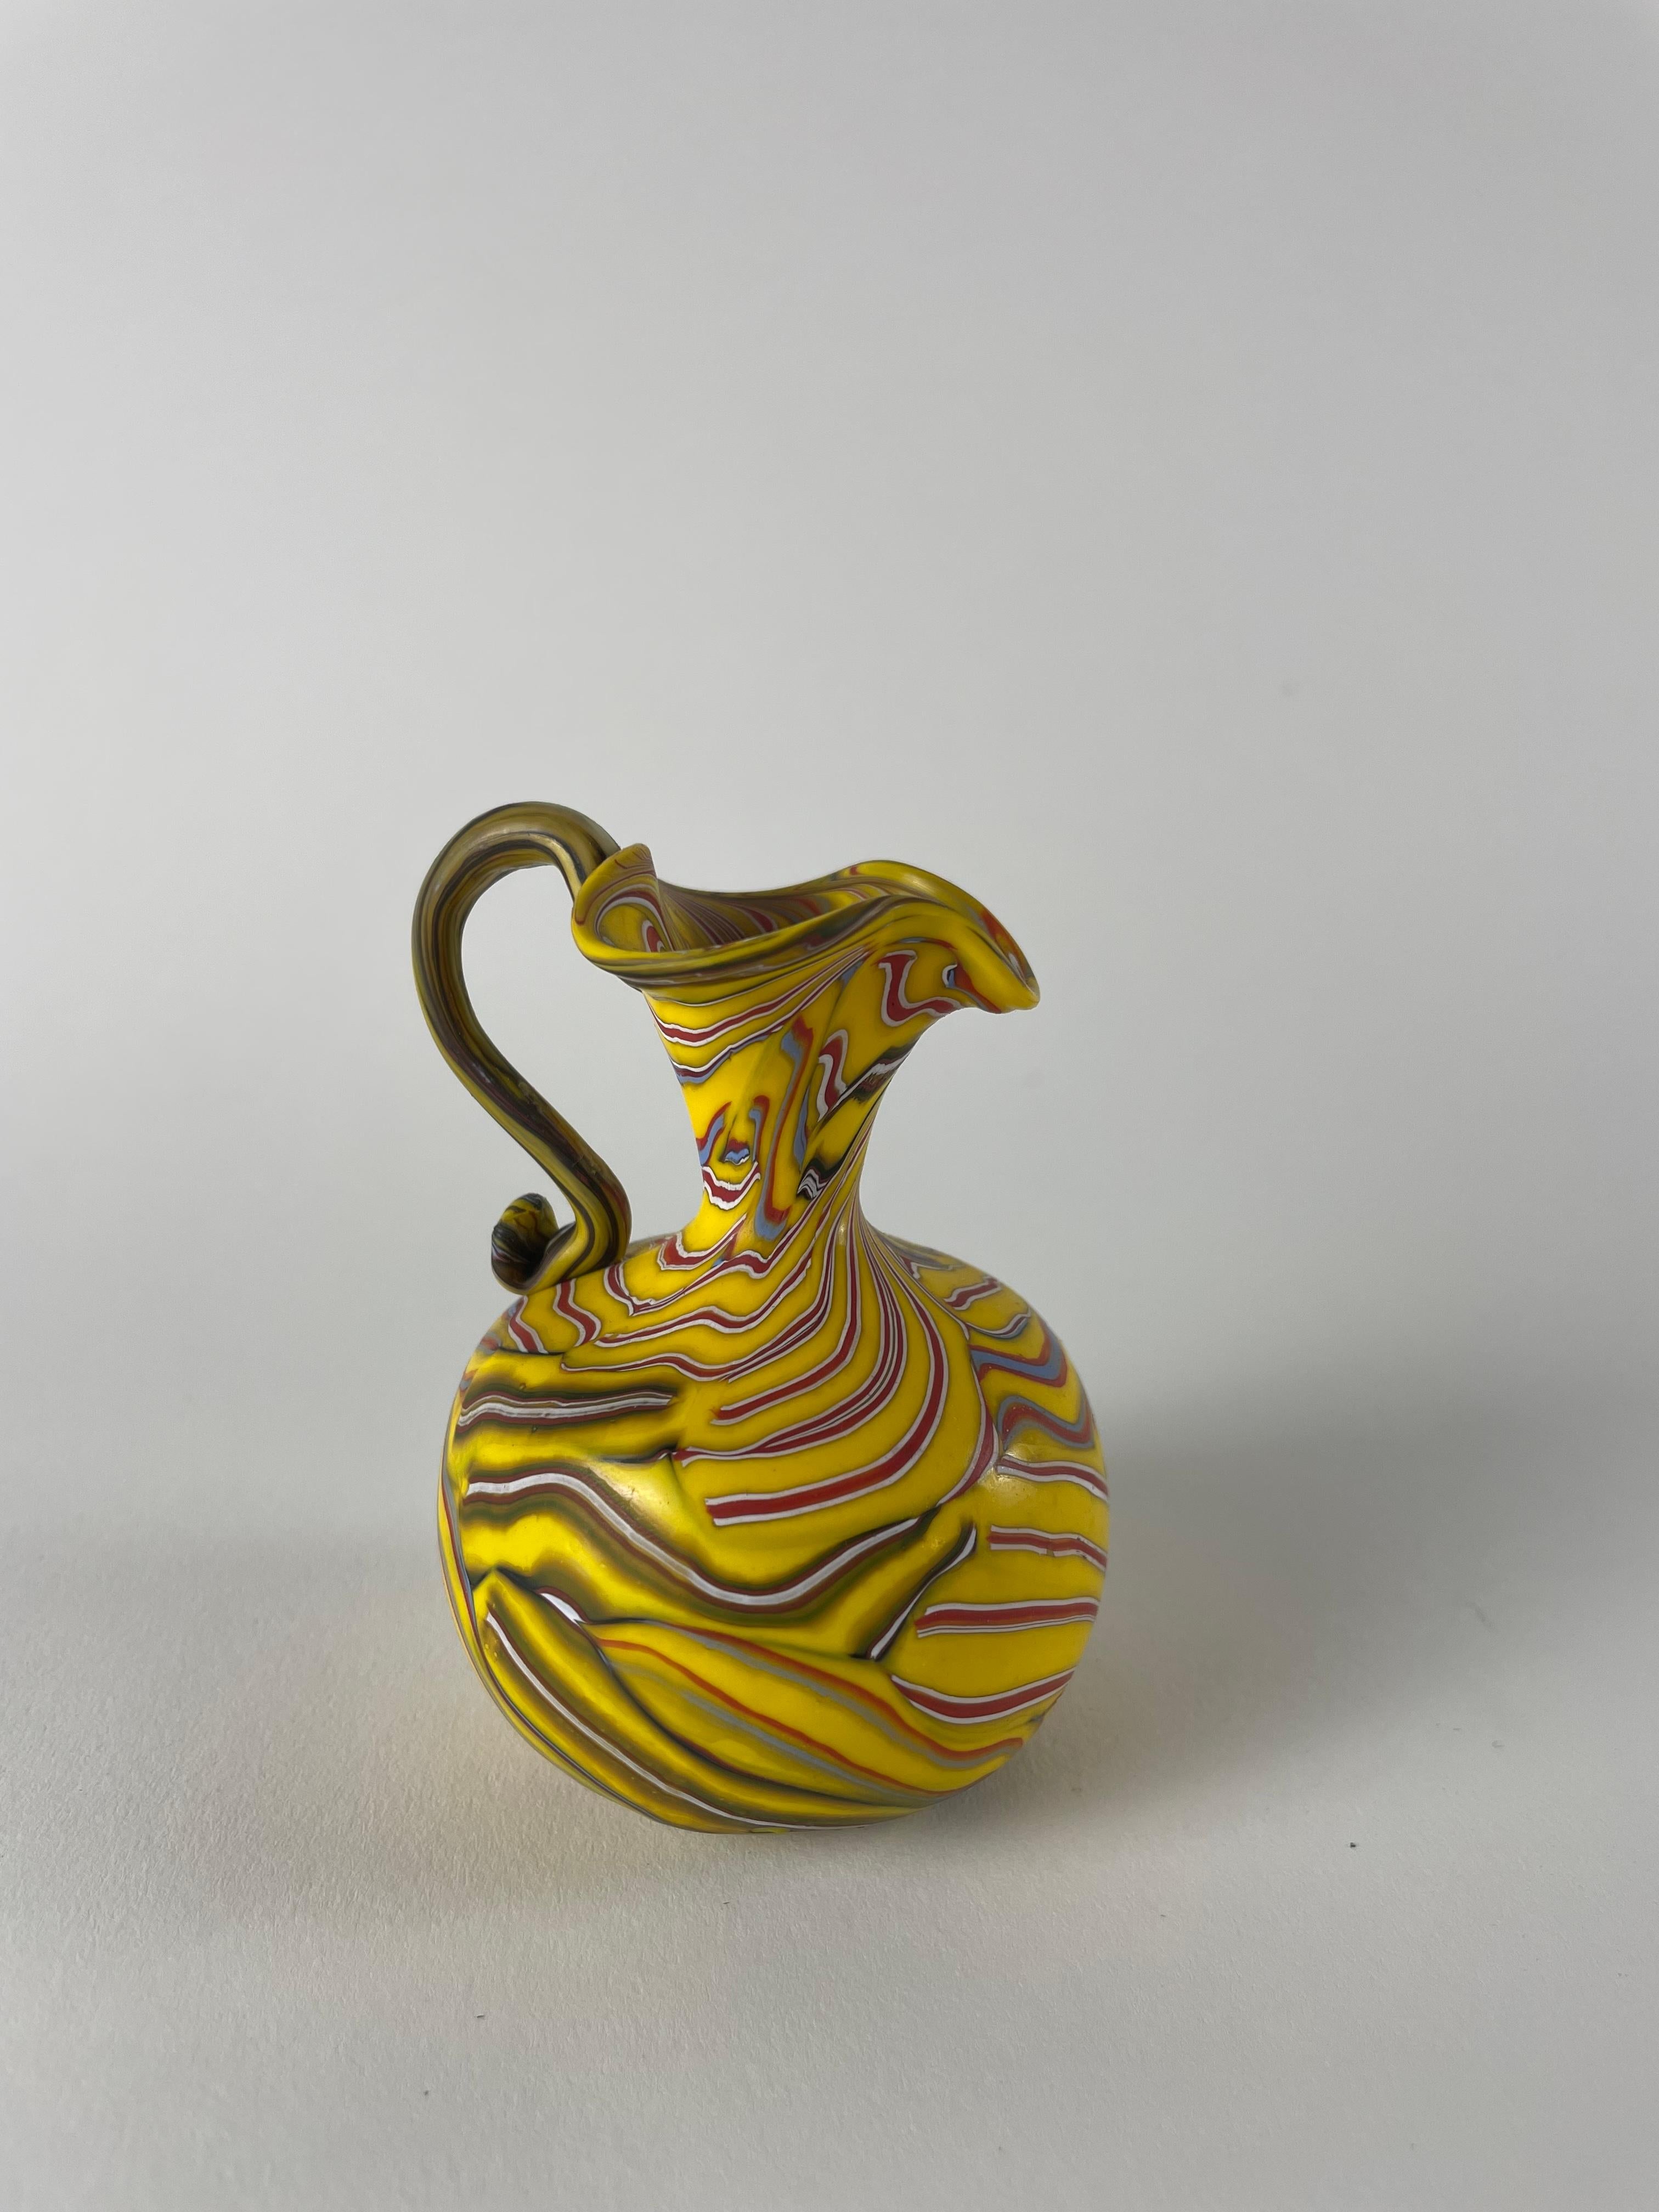 Wir stellen Ihnen den Vaso a cane vor, einen kleinen Schatz, der die unglaubliche Handwerkskunst von Murano verkörpert. Diese exquisite Vase wird in sorgfältiger Handarbeit mit einer einzigartigen Technik hergestellt, bei der kleine Glasstäbe